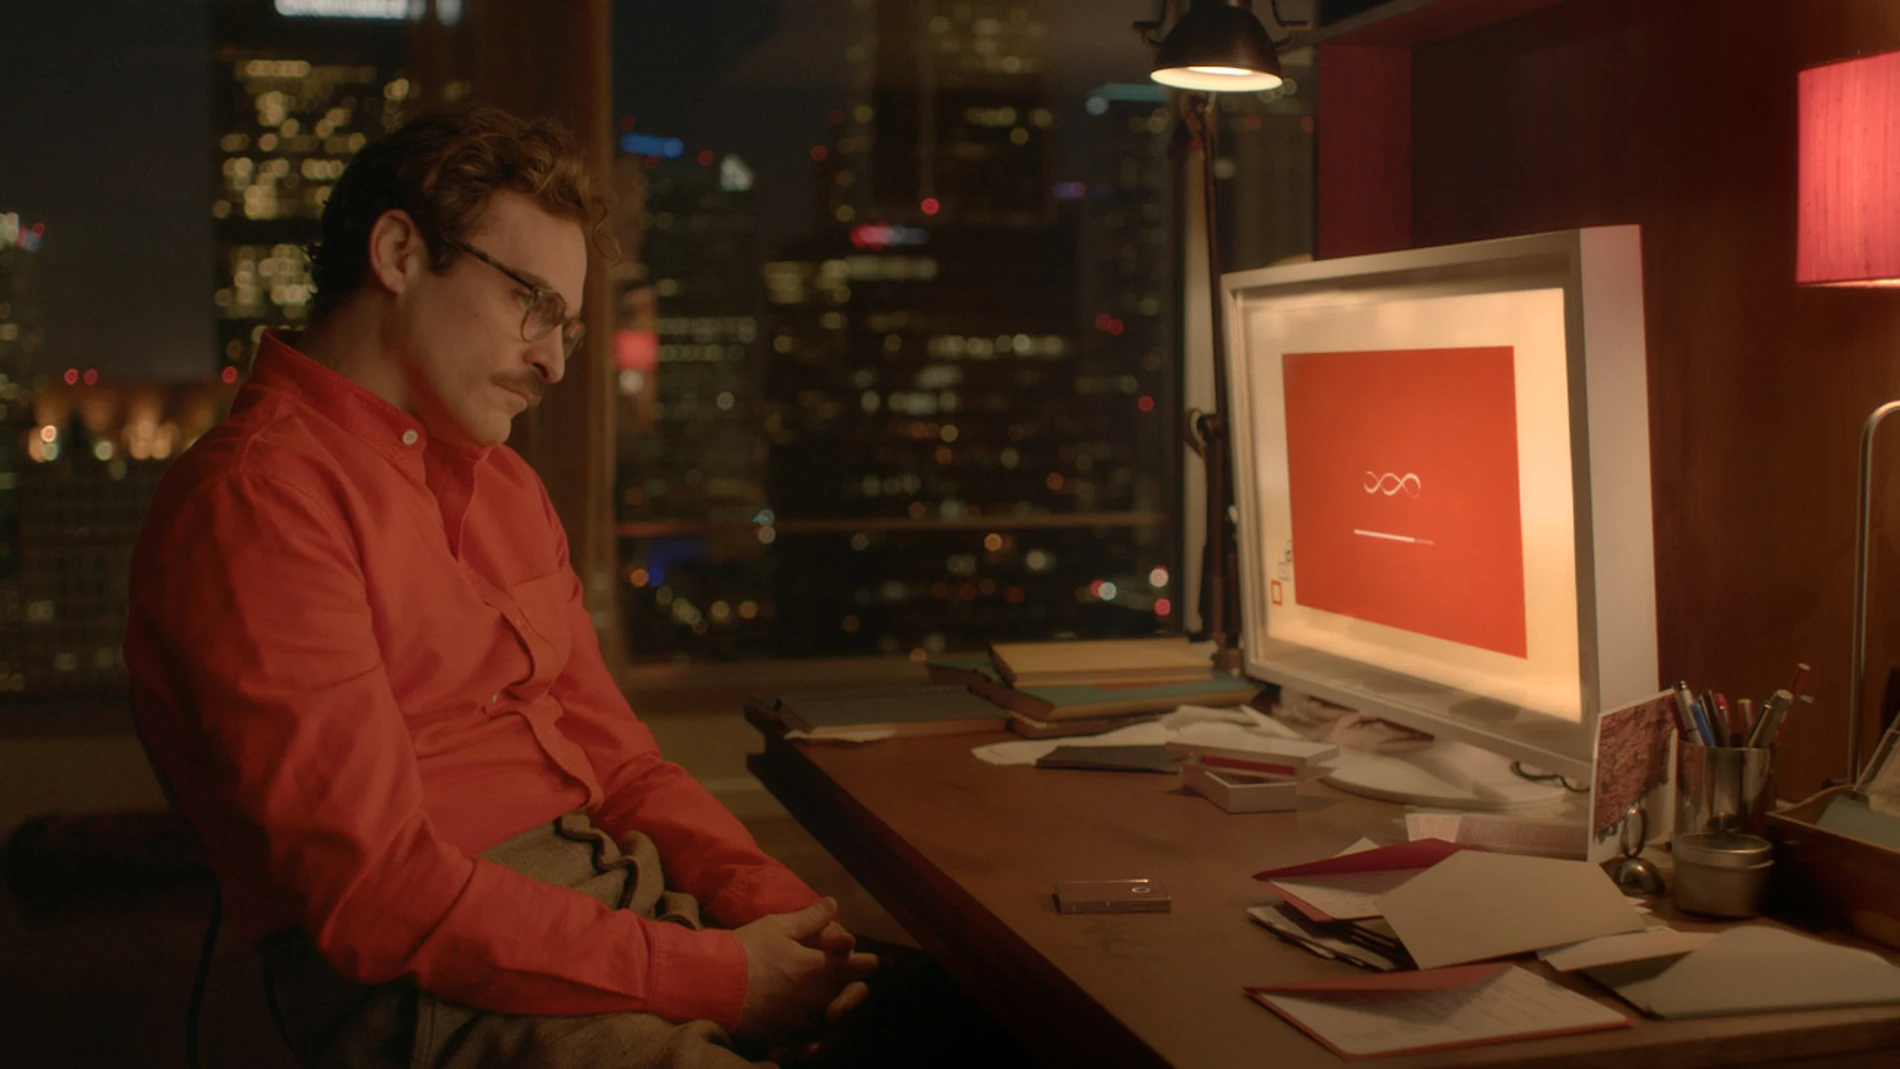 En 'Her', Joaquin Phoenix se enamora de su asistente virtual. ¿Podría pasarme a mi lo mismo con Siri?